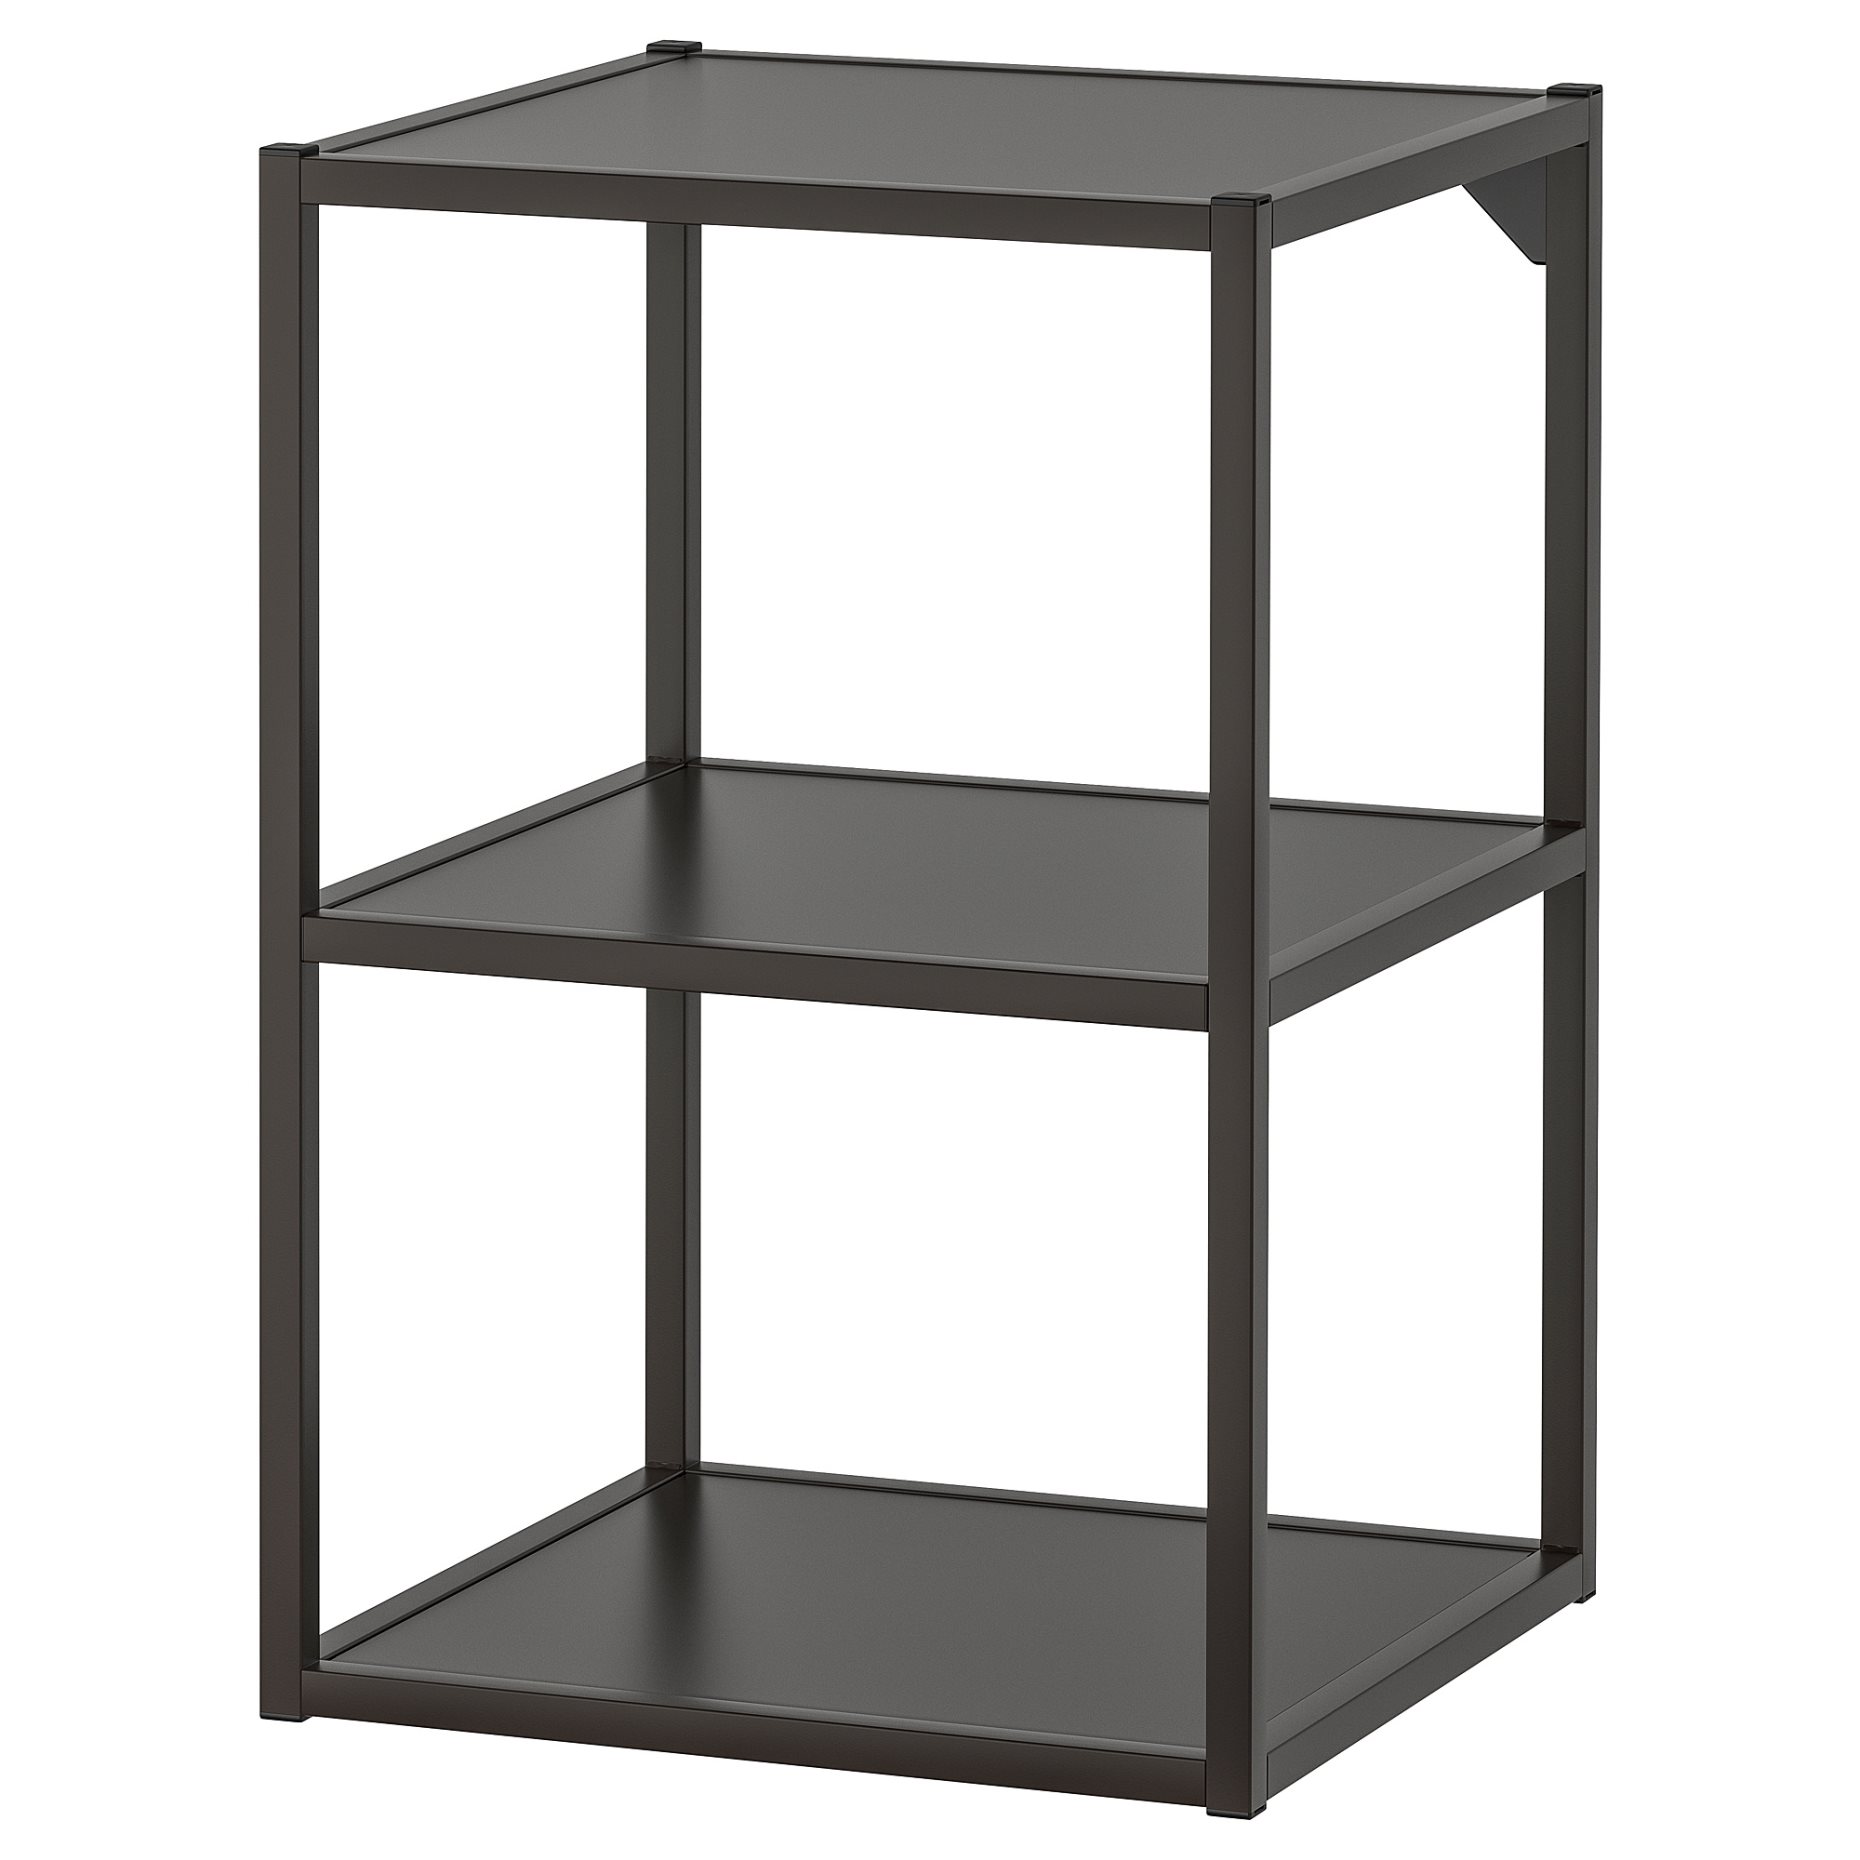 ENHET, base frame with shelves, 40x40x60 cm, 404.489.51